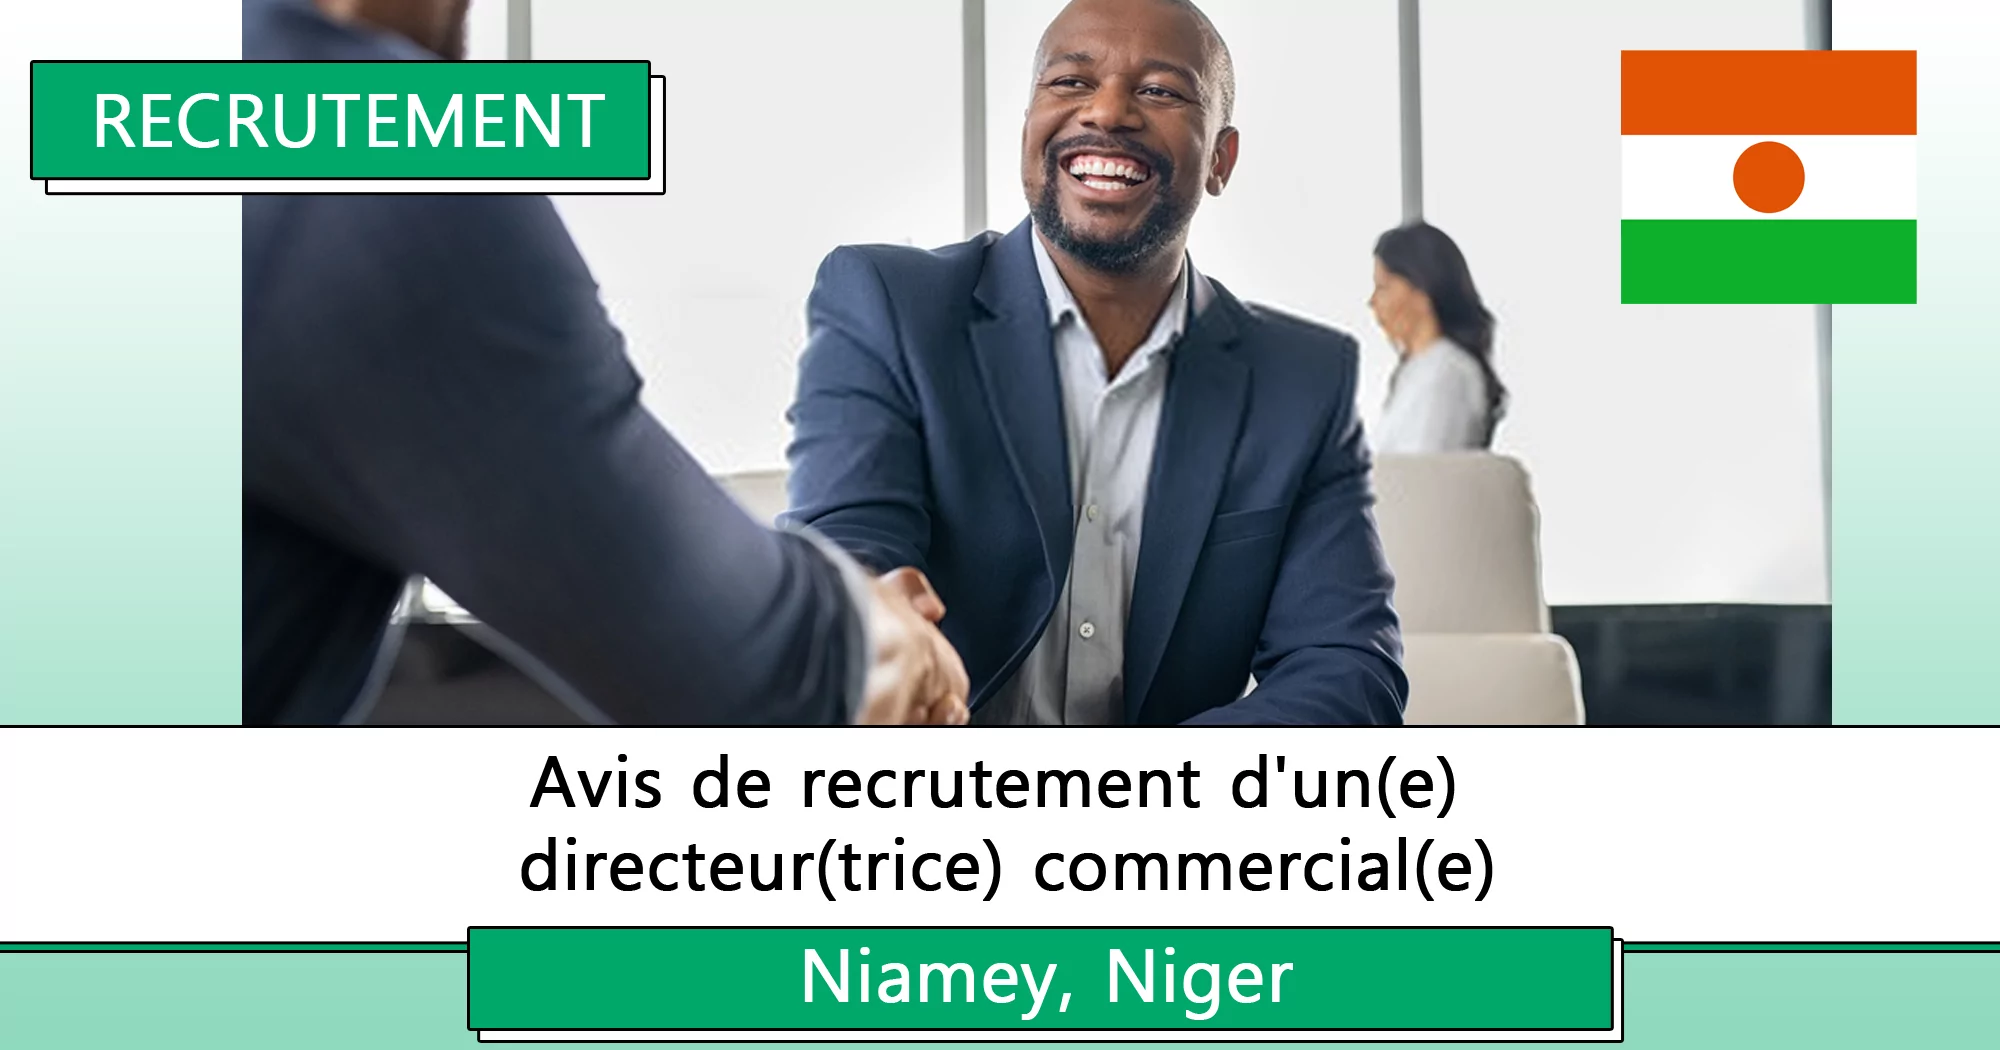 Avis de recrutement d’un(e) directeur(trice) commercial(e), Niamey, Niger